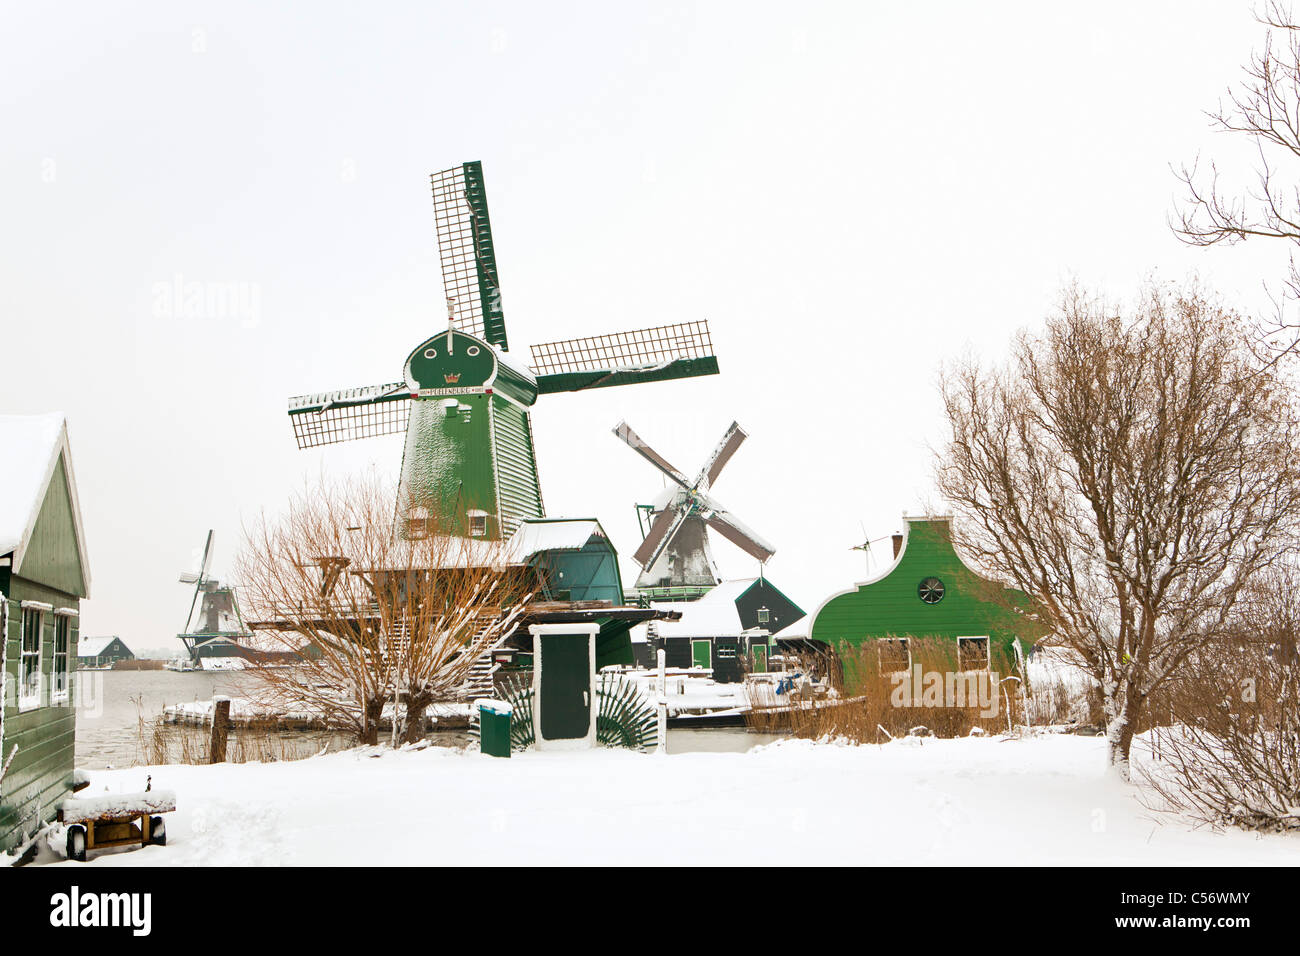 Zaanse Schans, Dorf an den Ufern des Flusses Zaan mit charakteristischen grünen hölzernen Häuser, historische Windmühlen. Winter, Schnee. Stockfoto